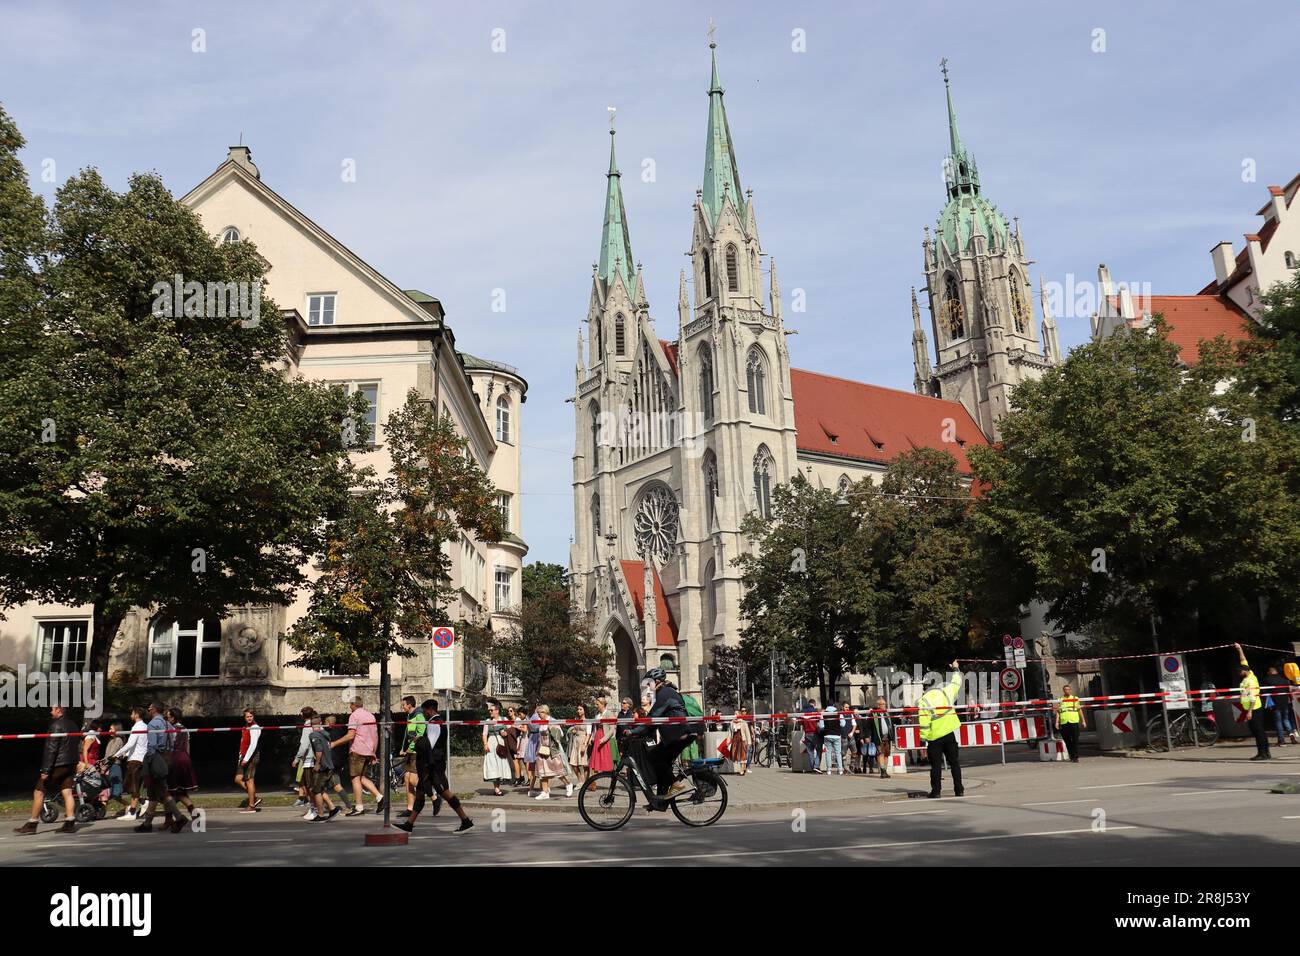 Monaco di Baviera, la capitale dello stato federale della Baviera. Dopo Berlino e Amburgo, è la terza città più popolosa della Germania ed è conosciuta come una di T... Foto Stock